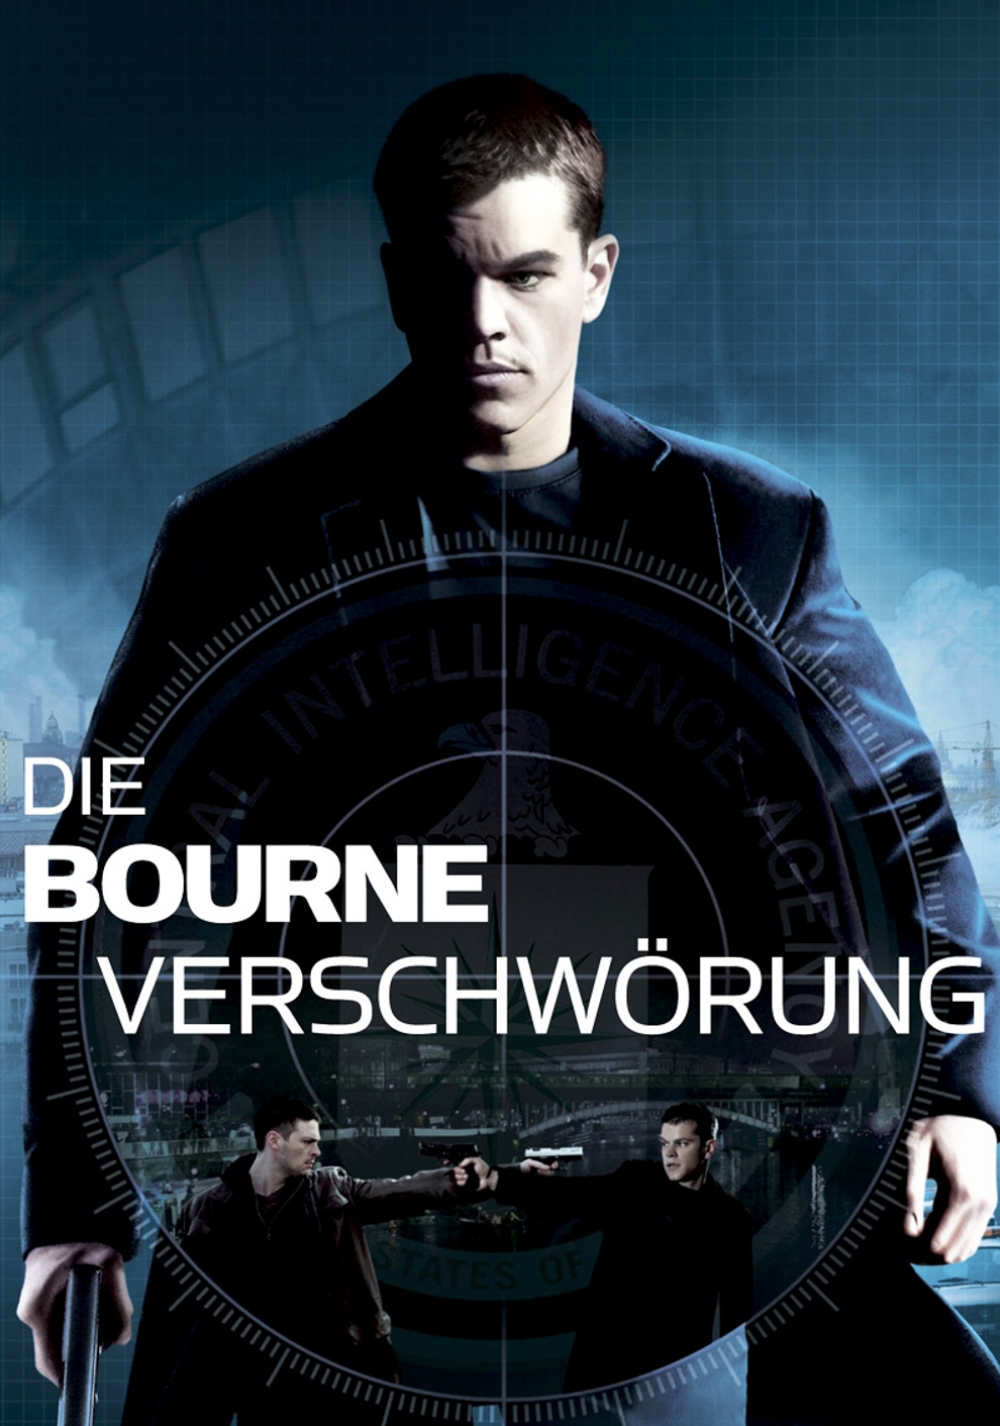 The Bourne Supremacy Art